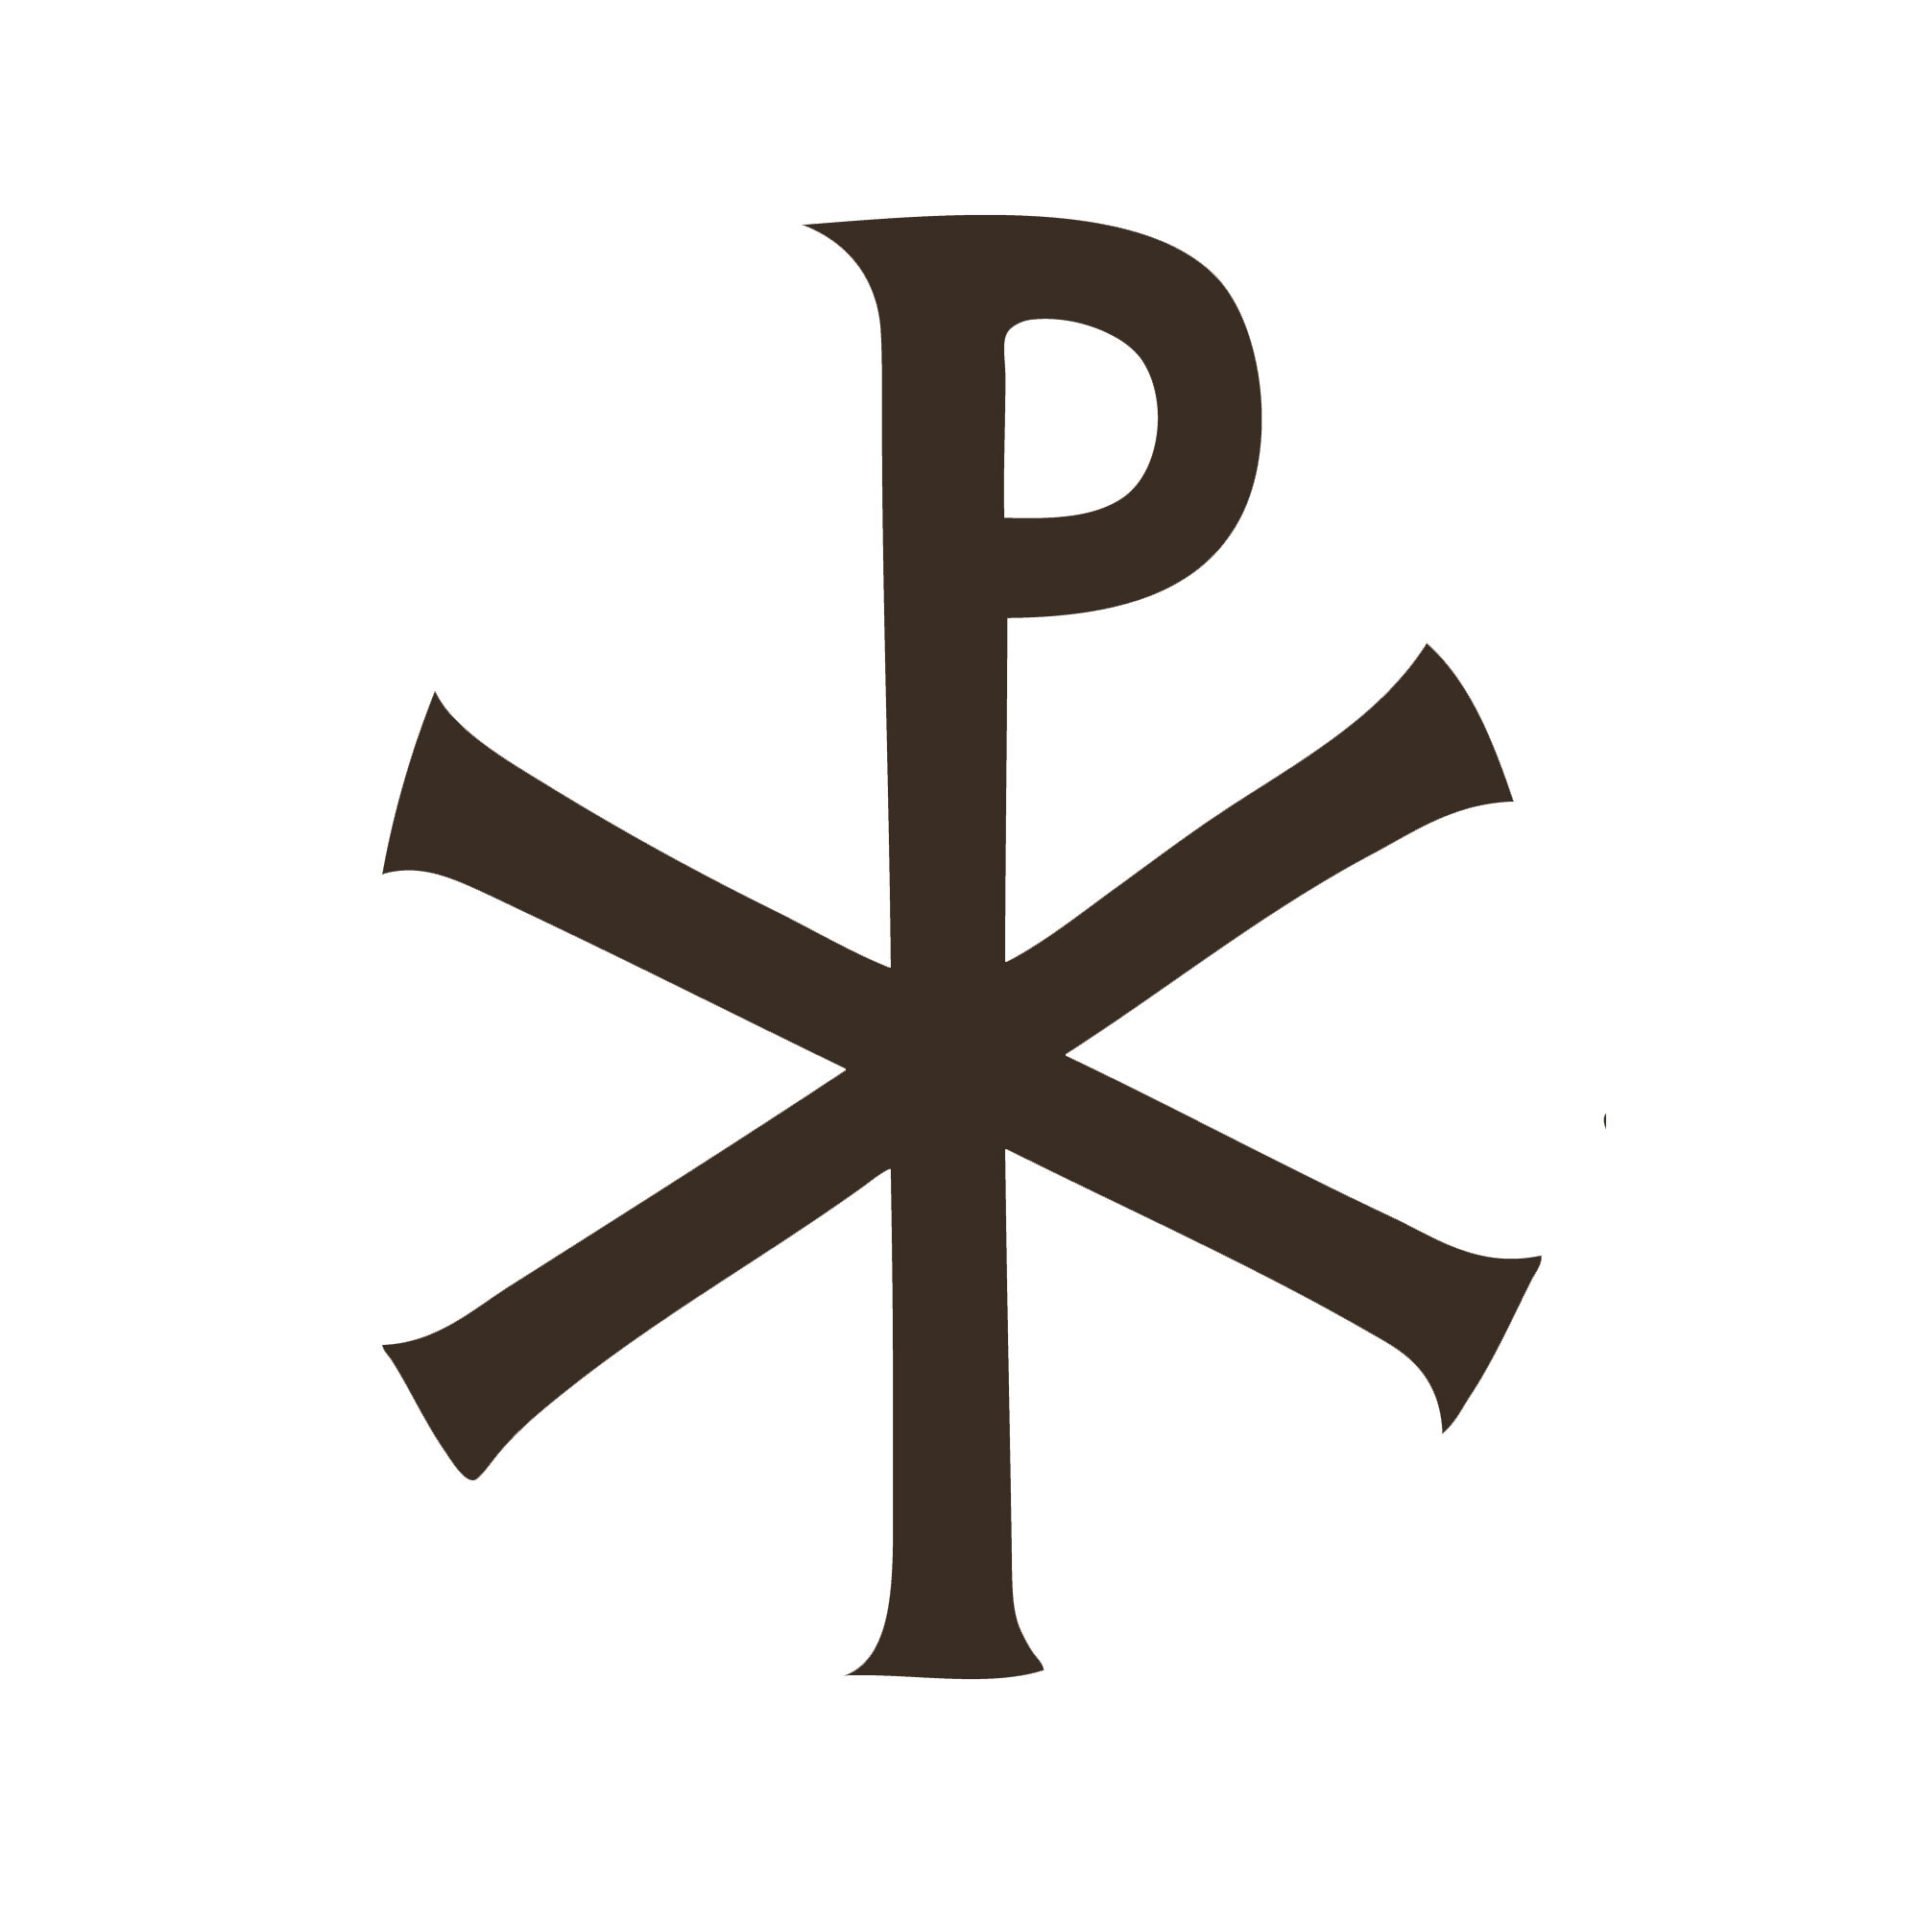 px symbol